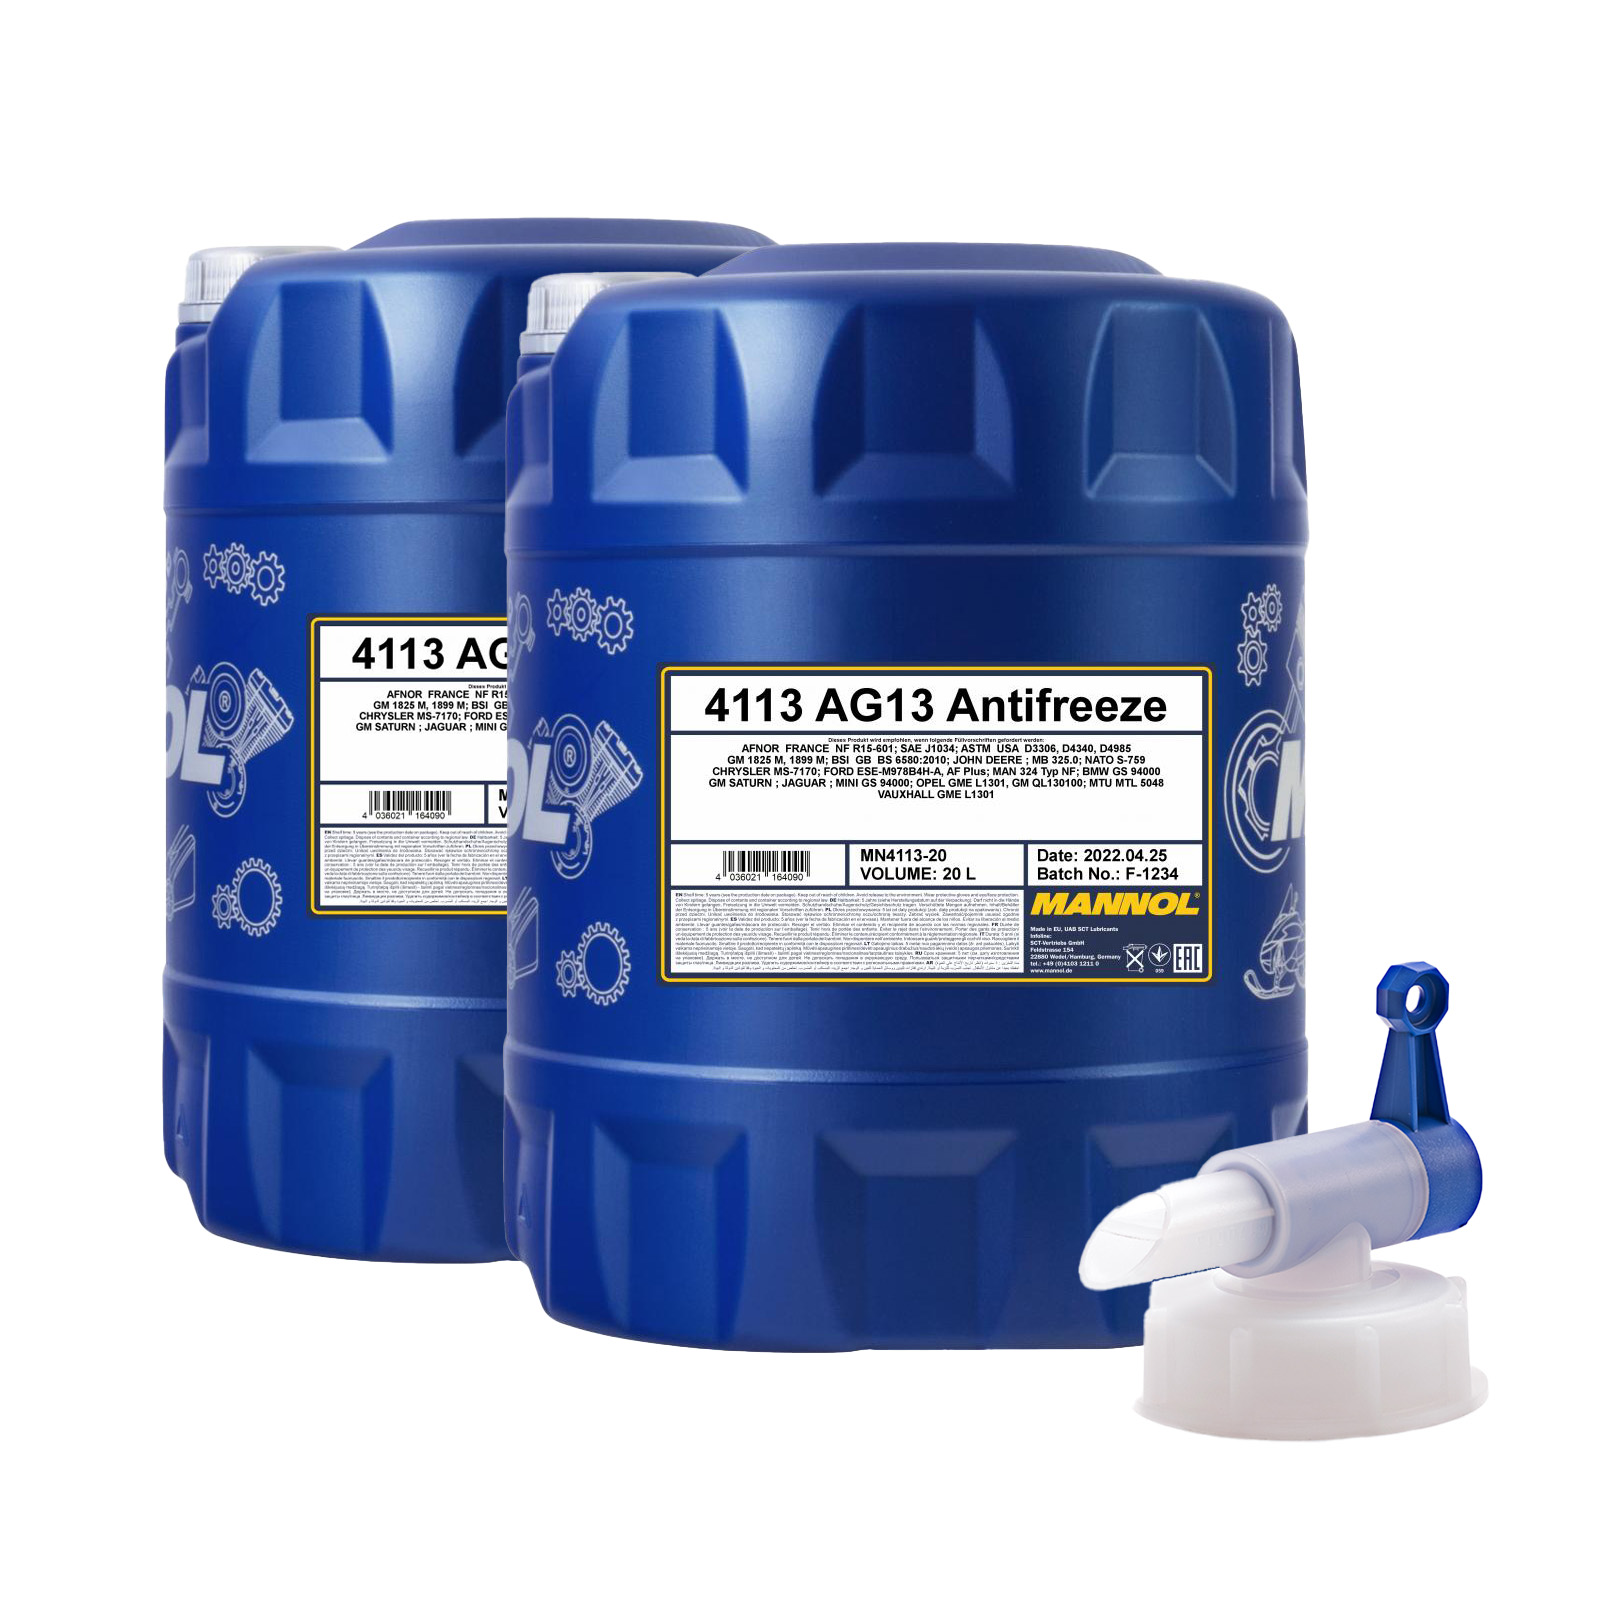 40 Liter MANNOL Hightec Antifreeze AG13 Kühlflüssigkeit +  Ablasshahn